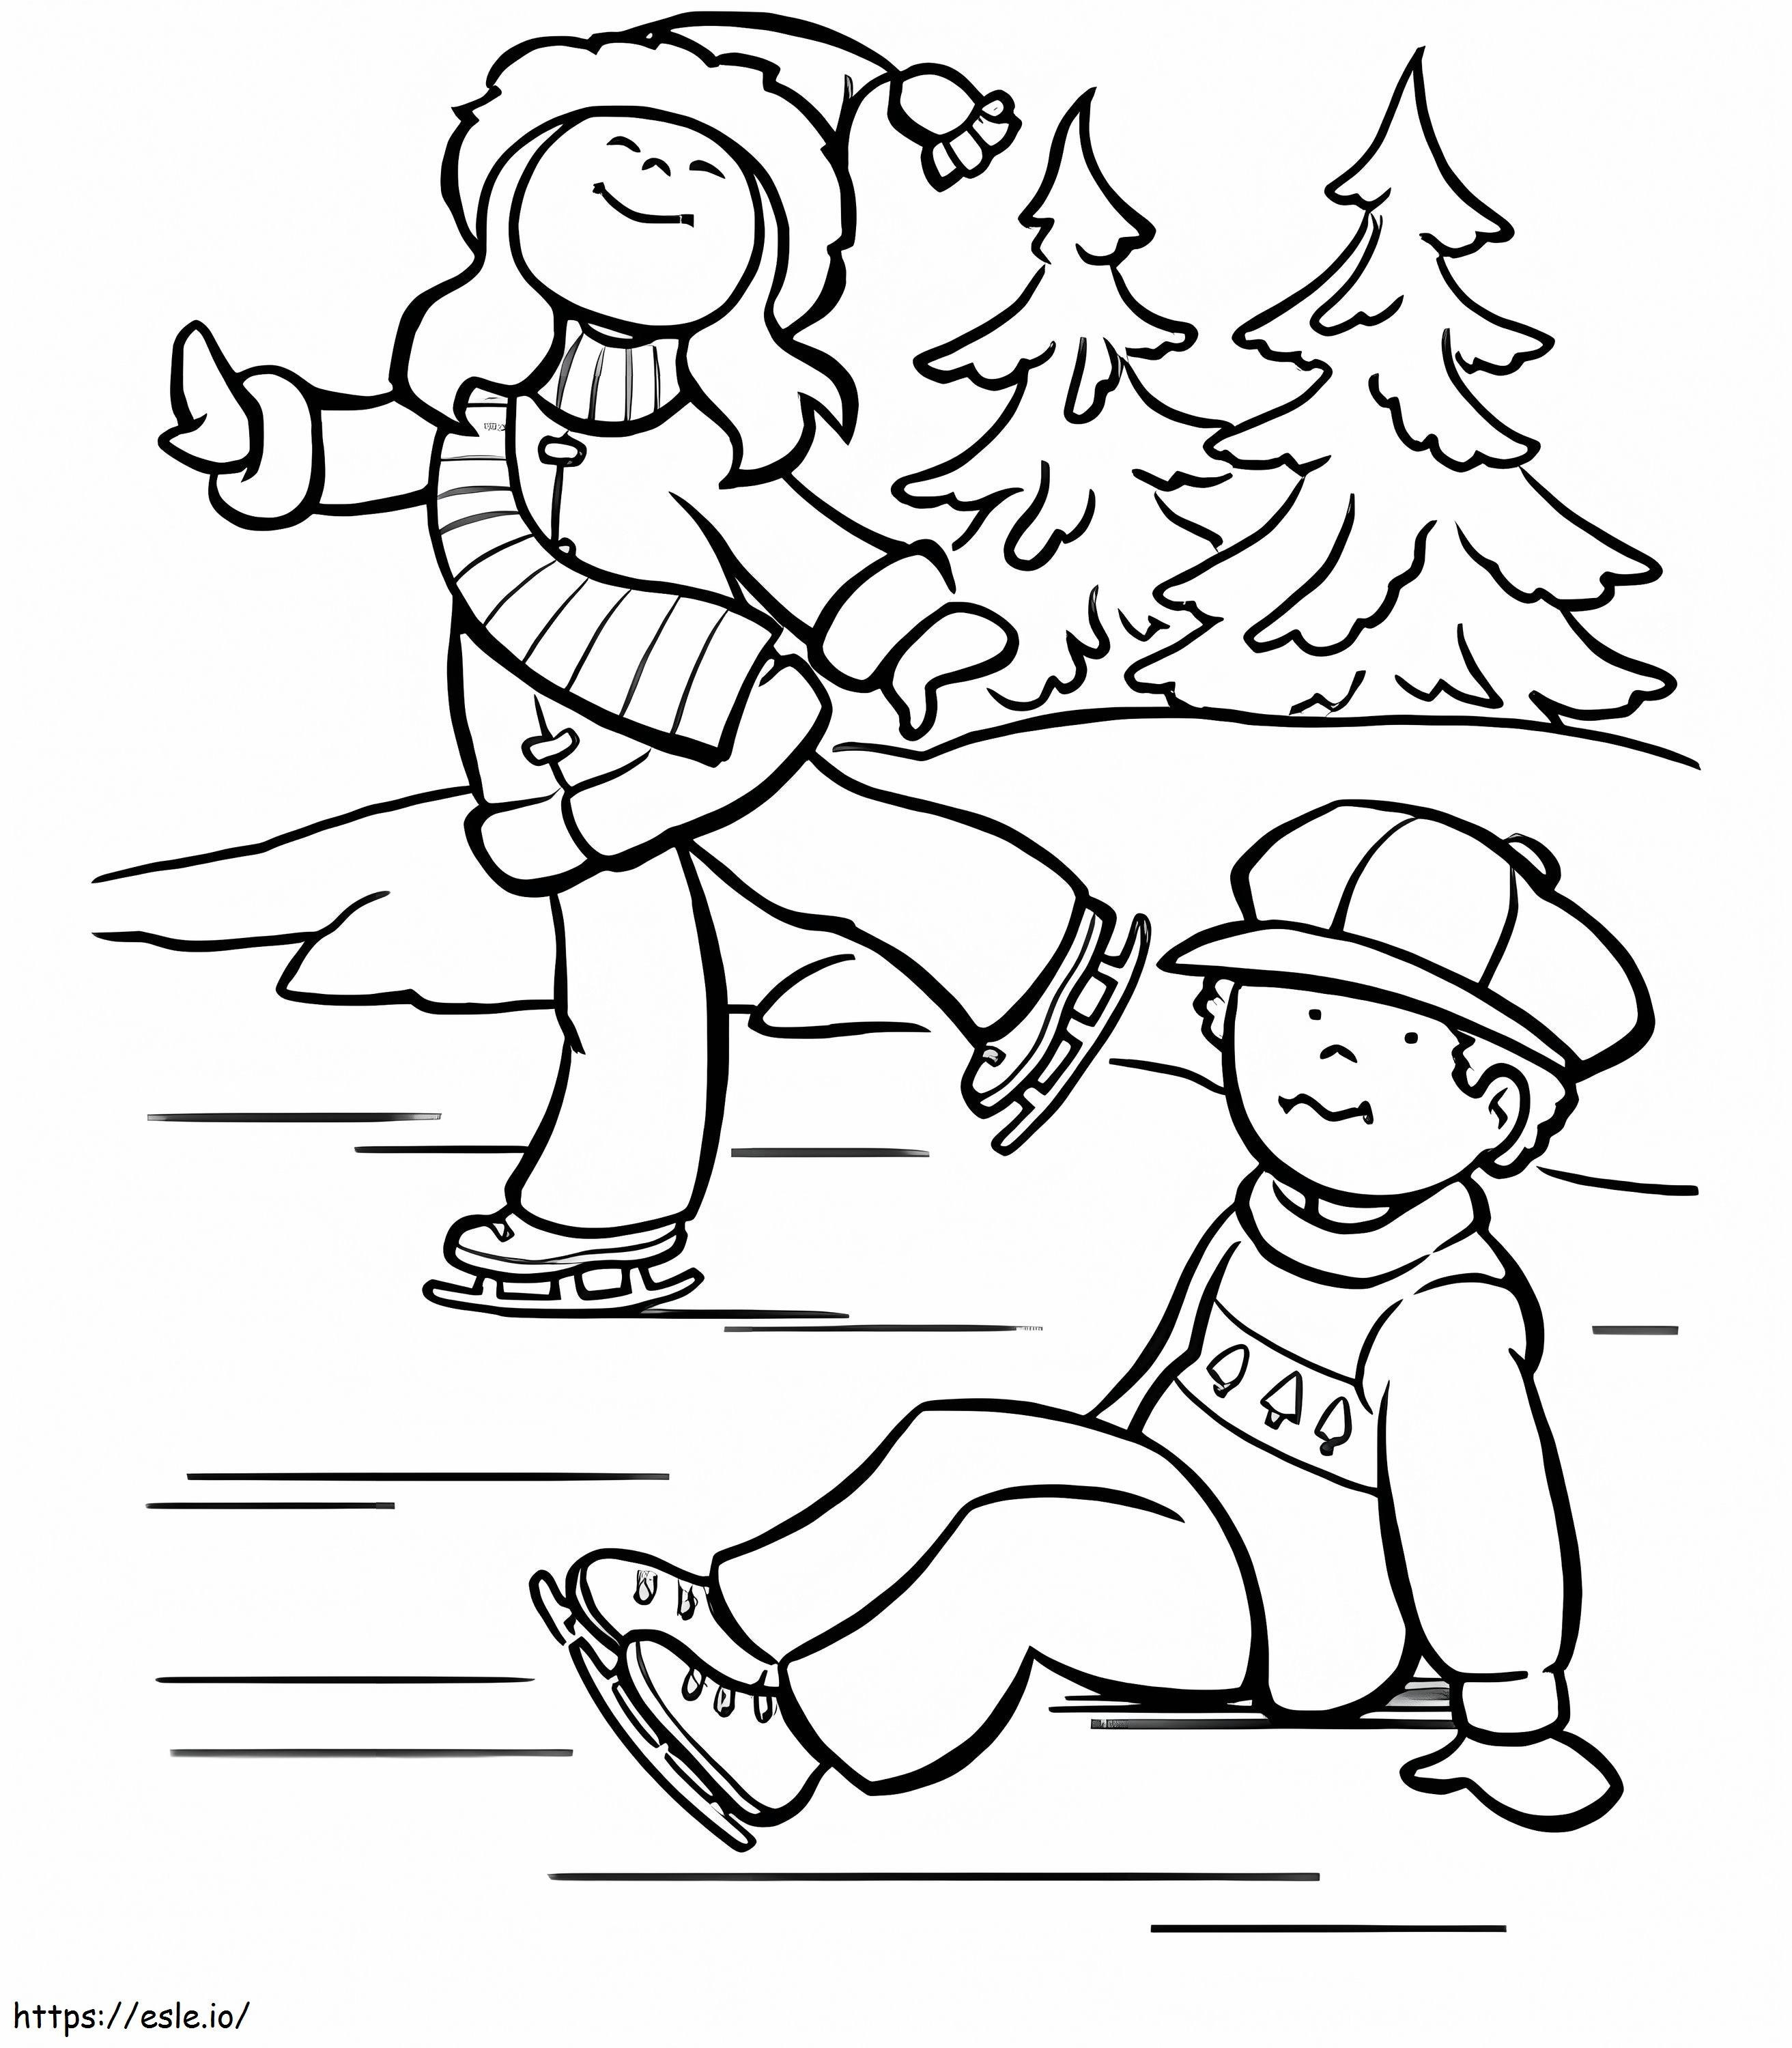 Zwei Kinder spielen Eislaufen ausmalbilder